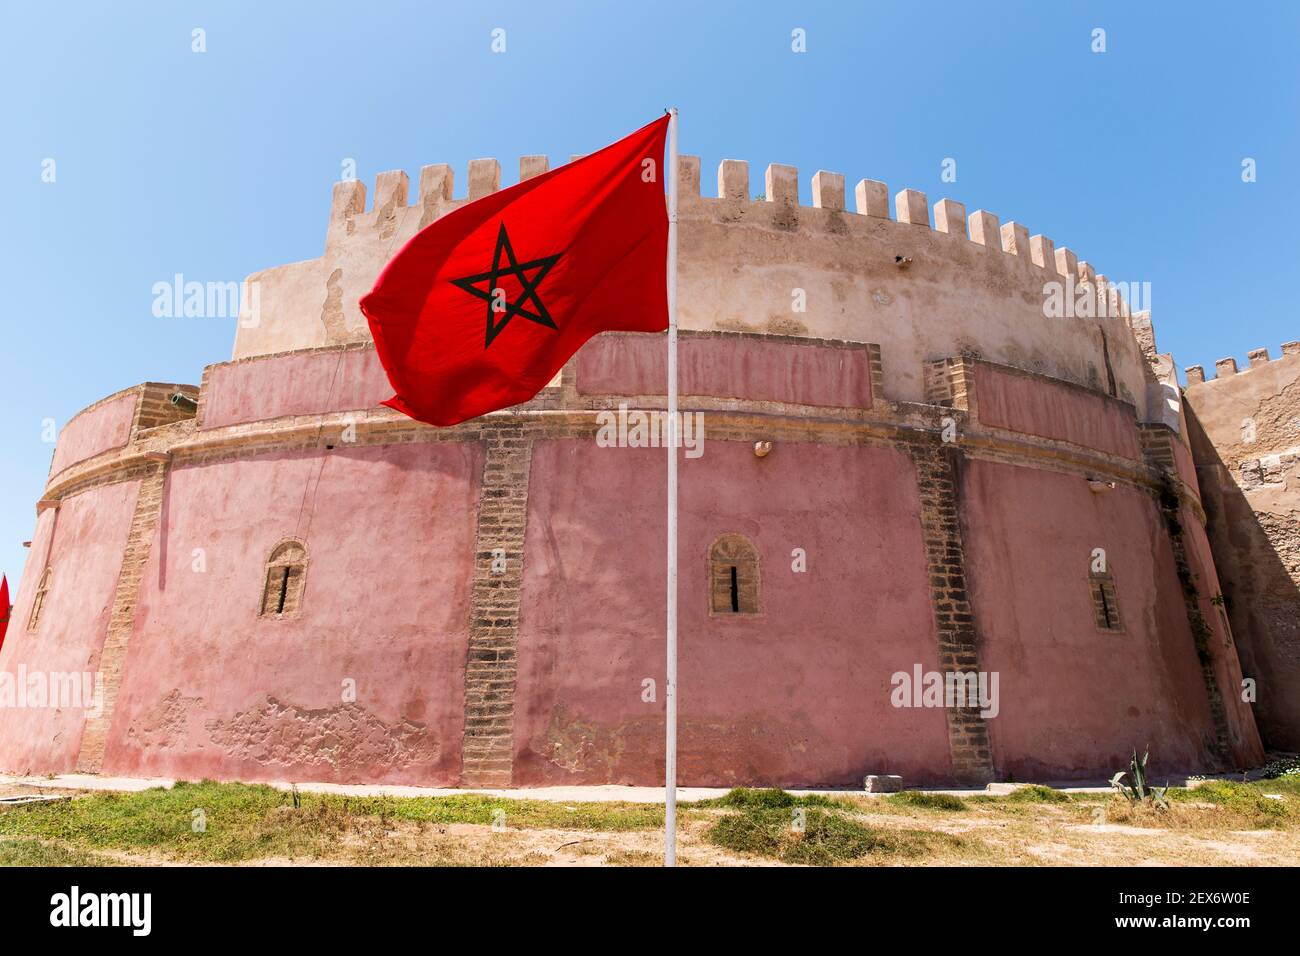 Marokko, Essaouira, die Südbastion und die Landesflagge Marokkos Stockfoto